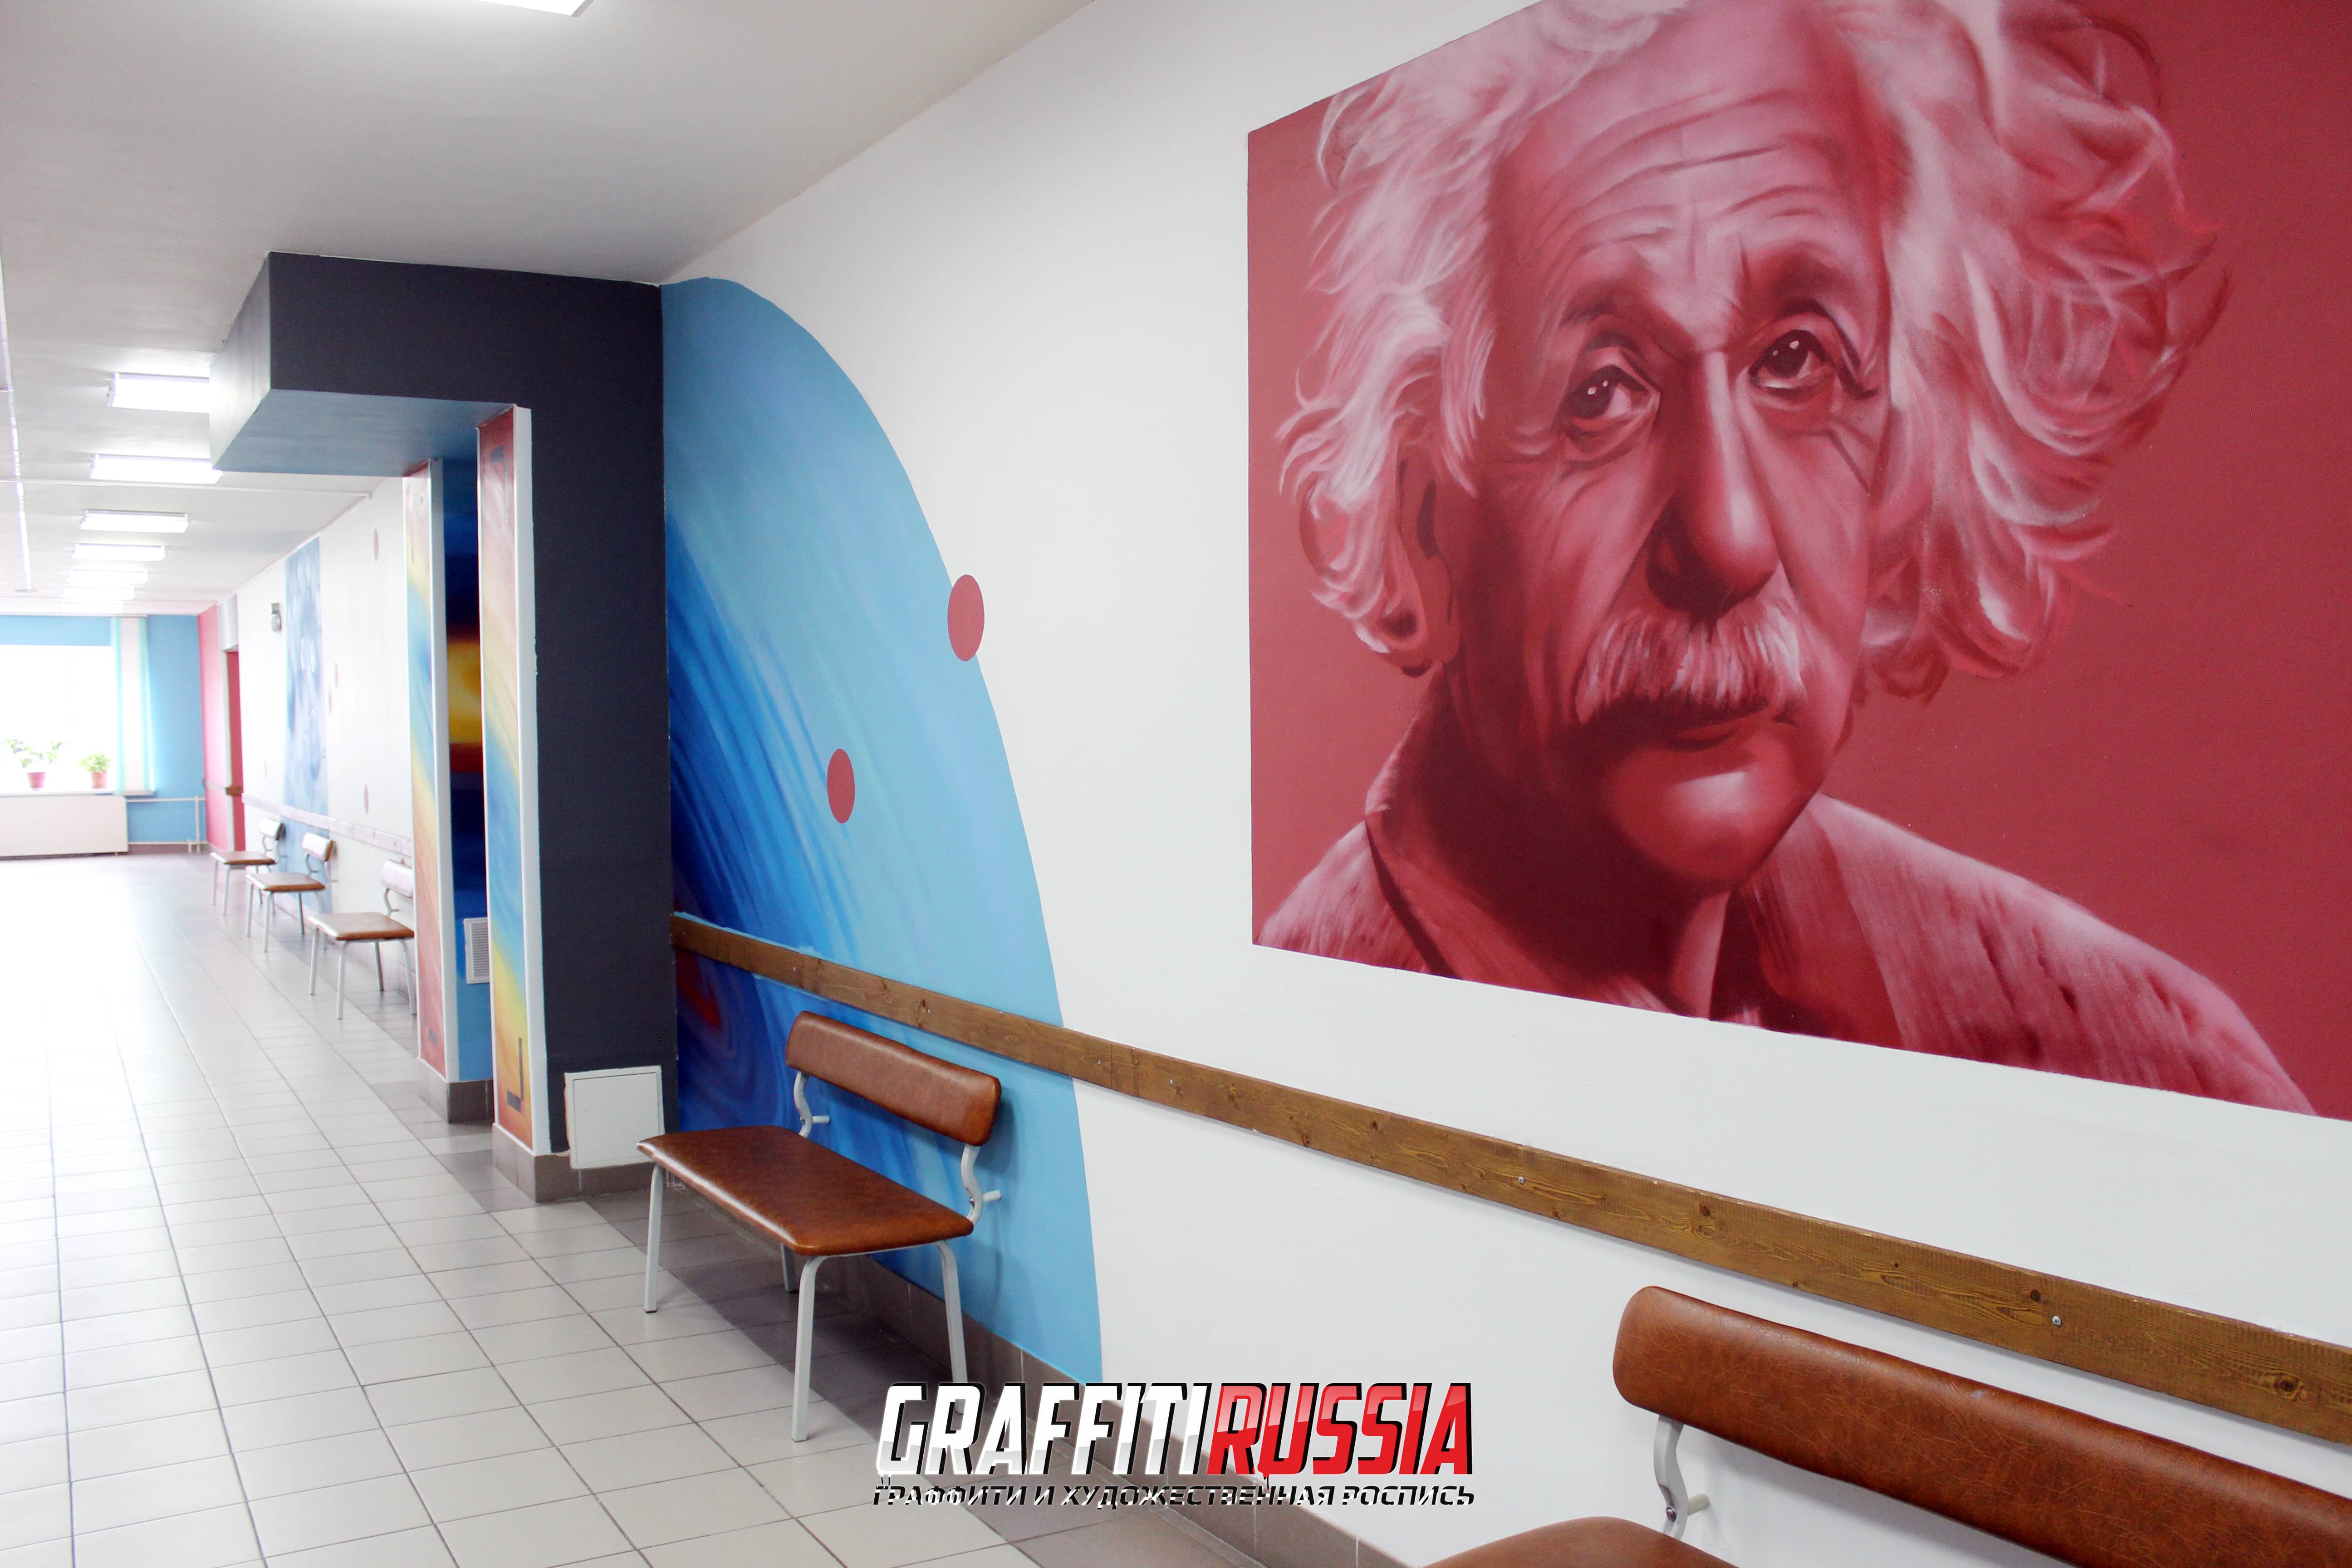 Граффити с изображение Альберта Эйнштейна.